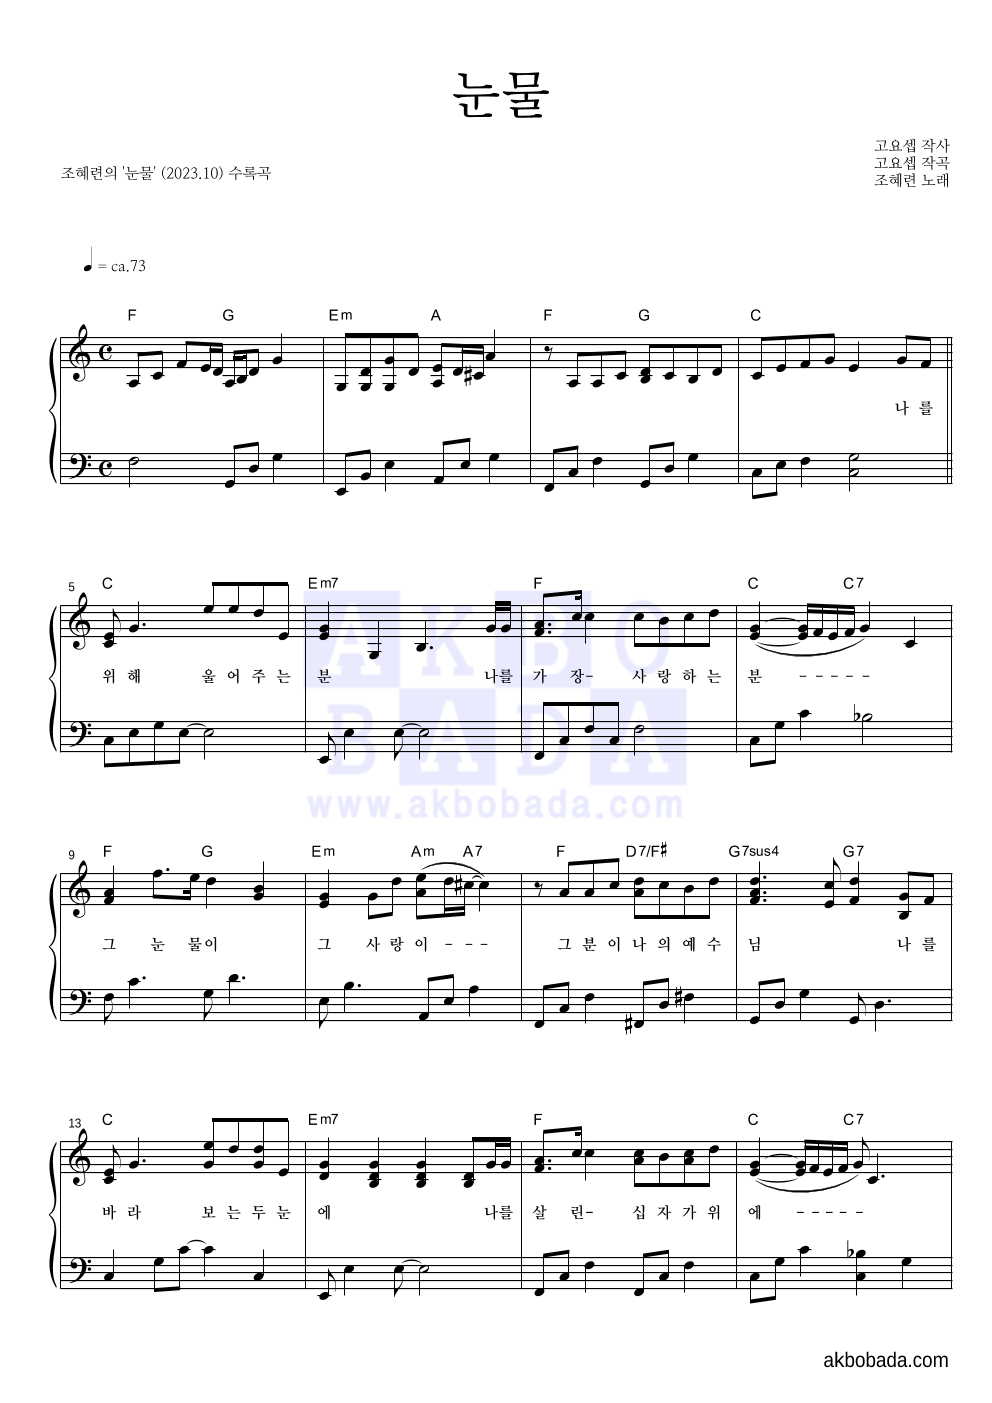 조혜련 - 눈물 피아노 2단 악보 